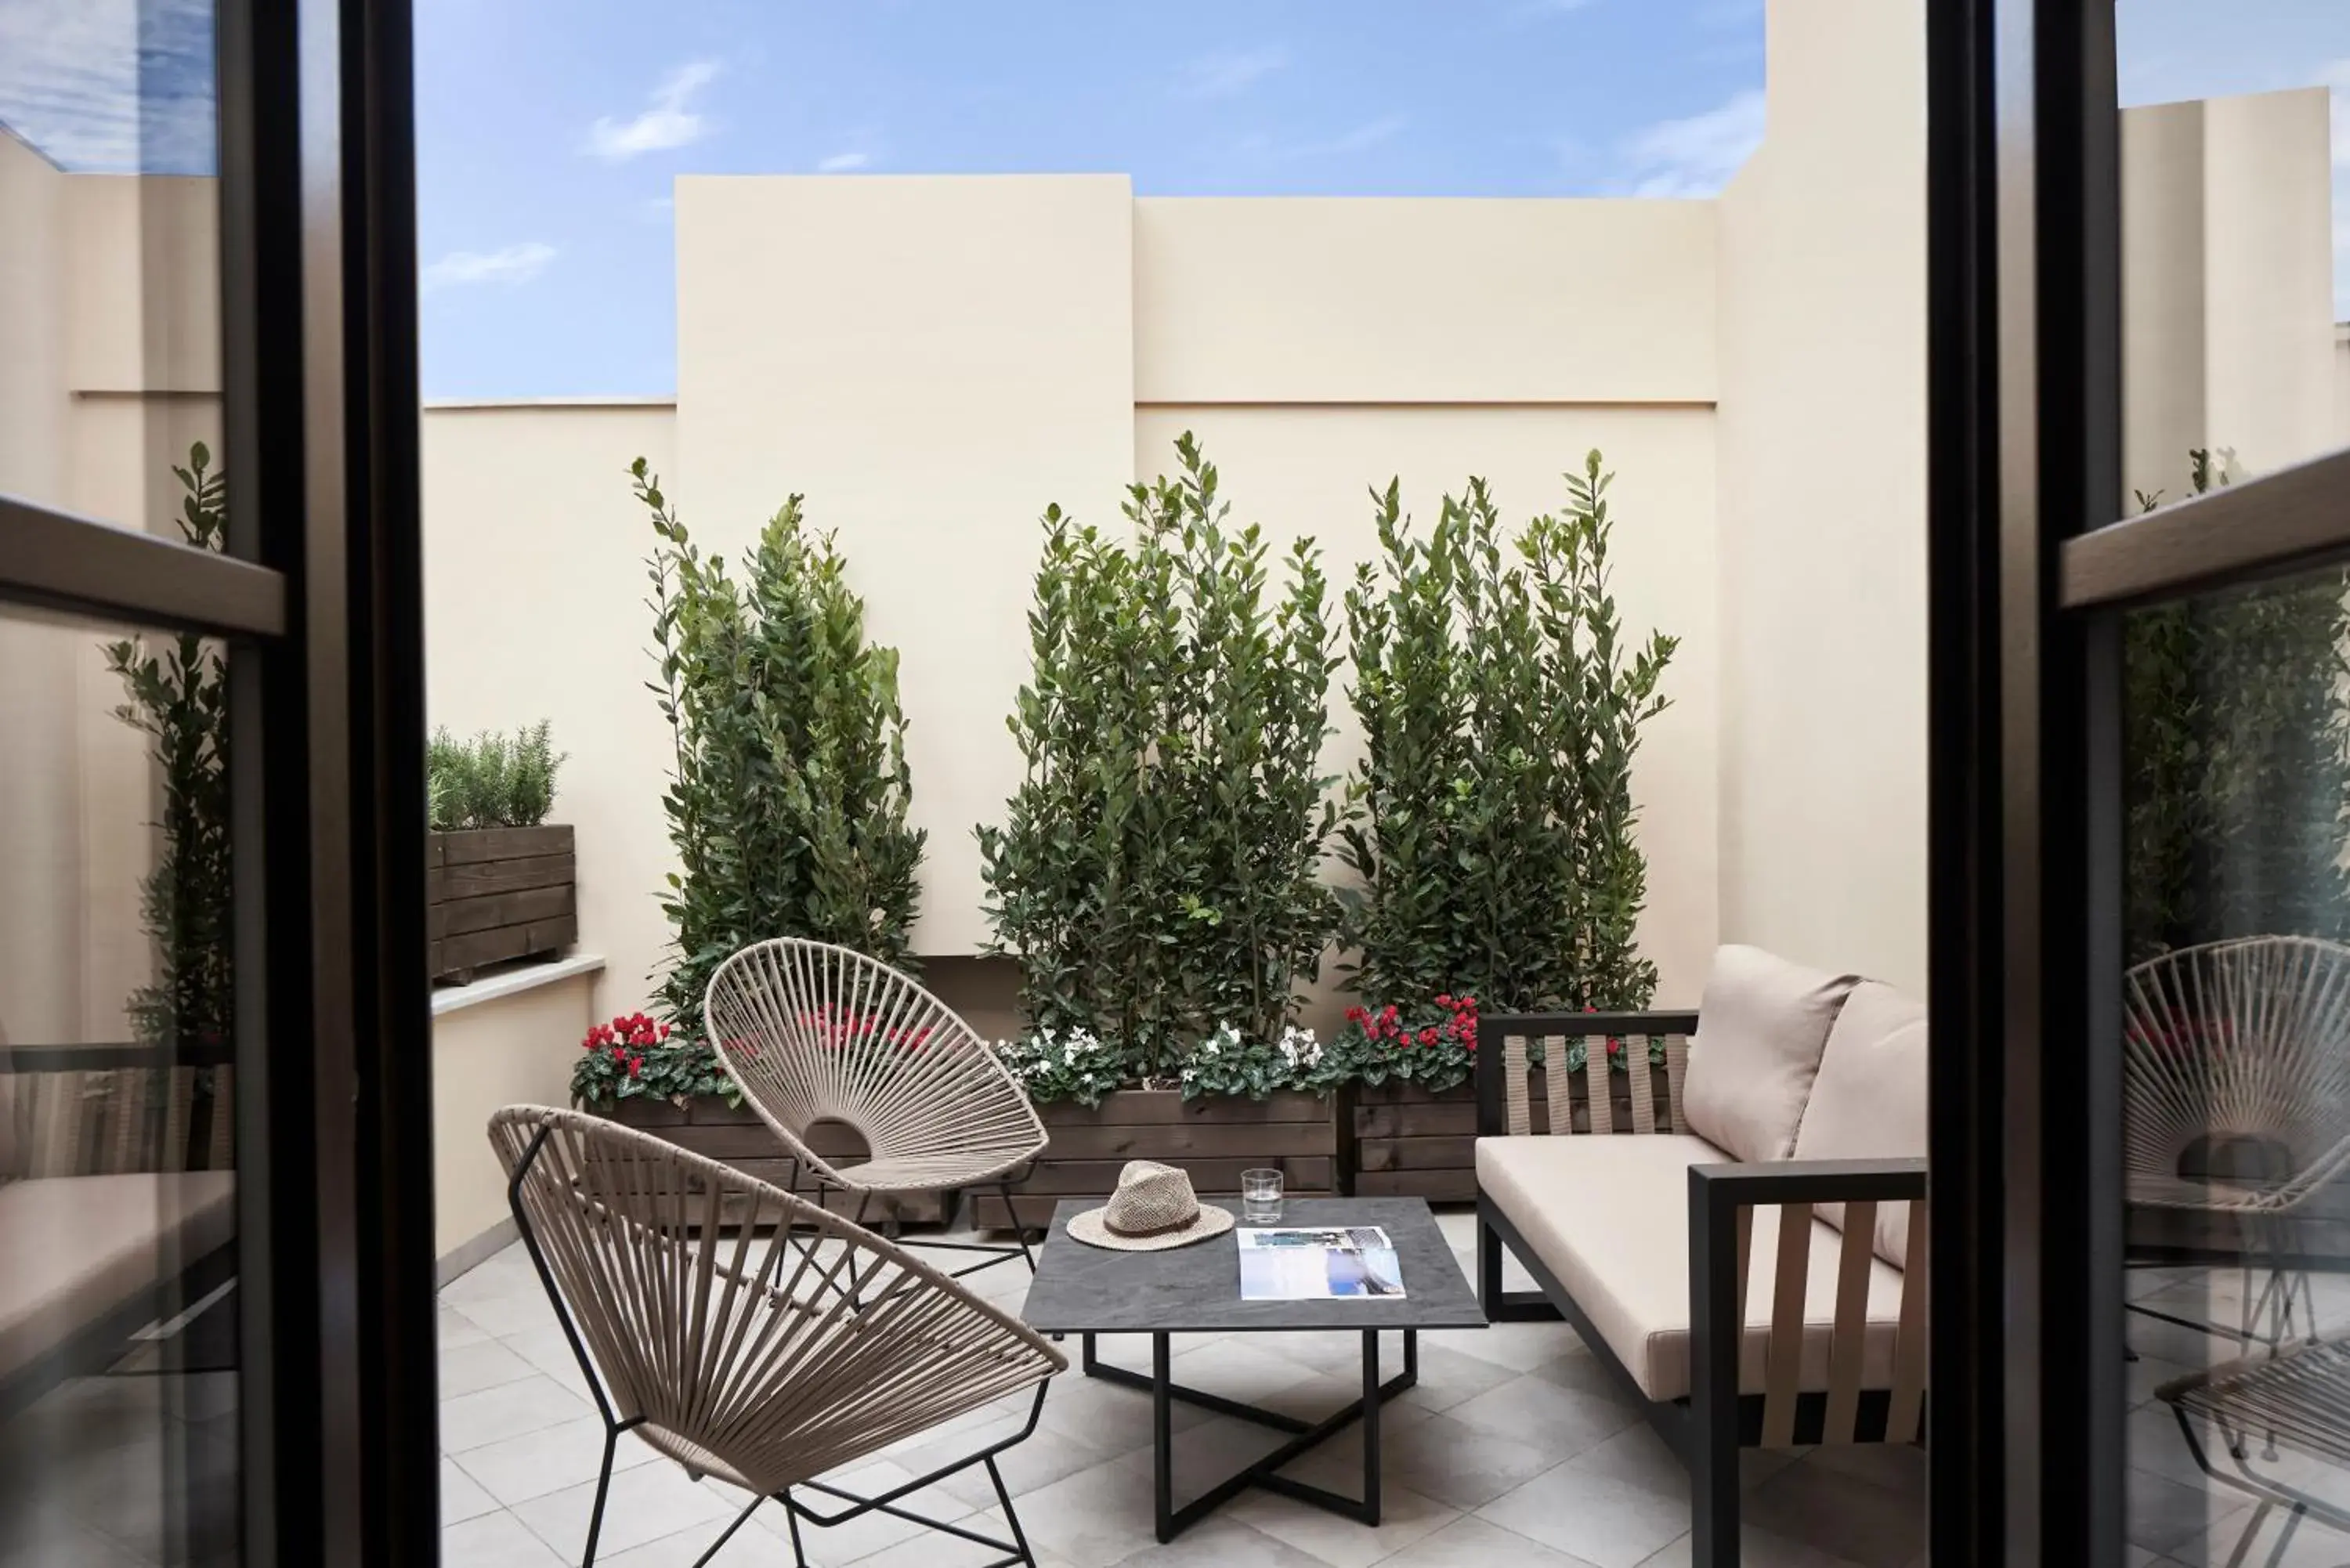 Balcony/Terrace, Seating Area in NLH MONASTIRAKI - Neighborhood Lifestyle Hotels